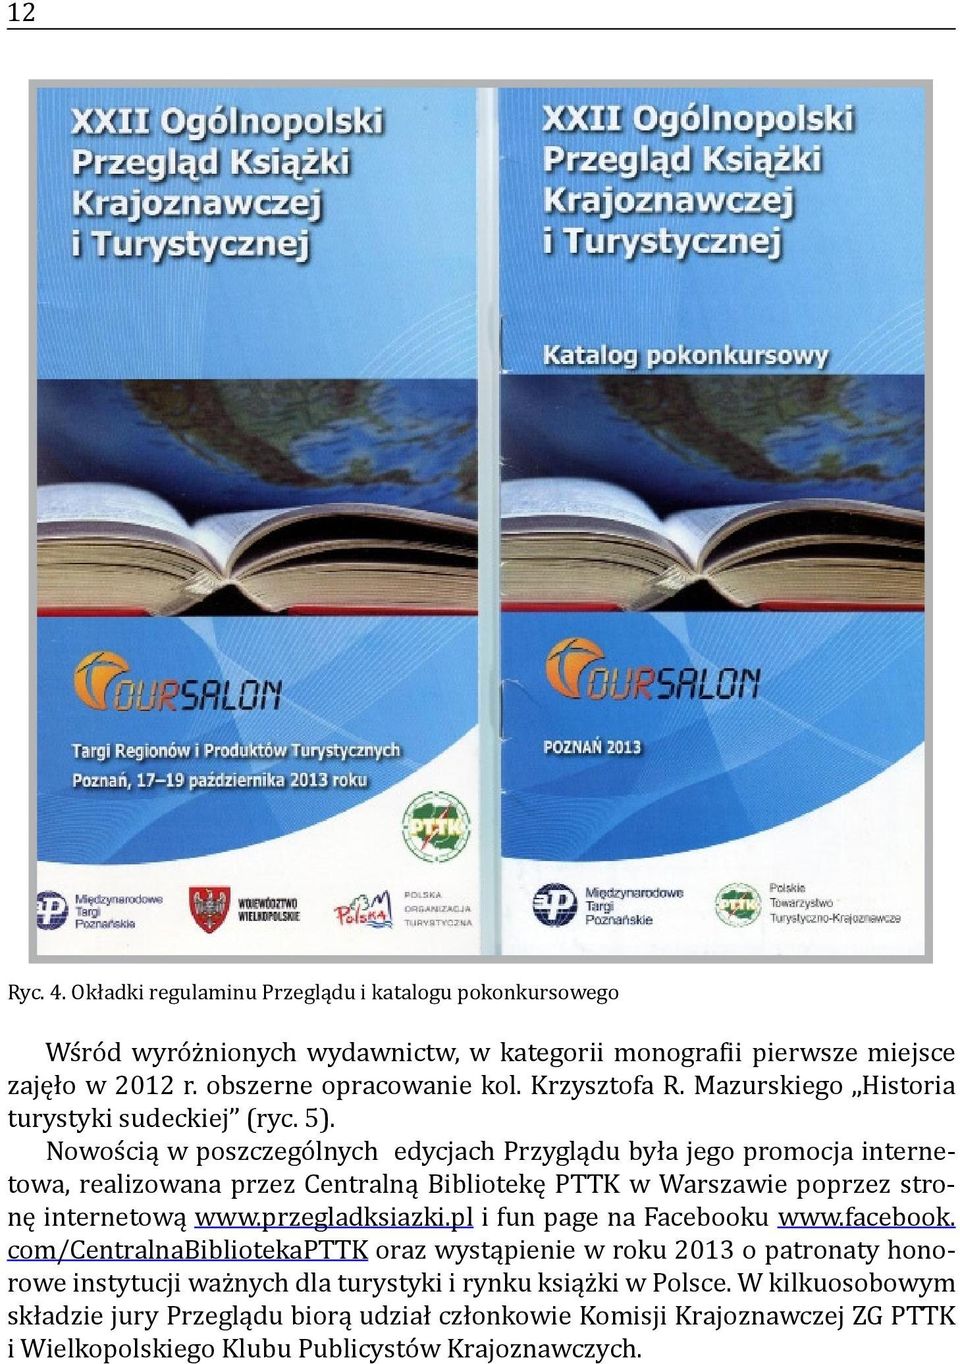 Nowością w poszczególnych edycjach Przyglądu była jego promocja internetowa, realizowana przez Centralną Bibliotekę PTTK w Warszawie poprzez stronę internetową www.przegladksiazki.